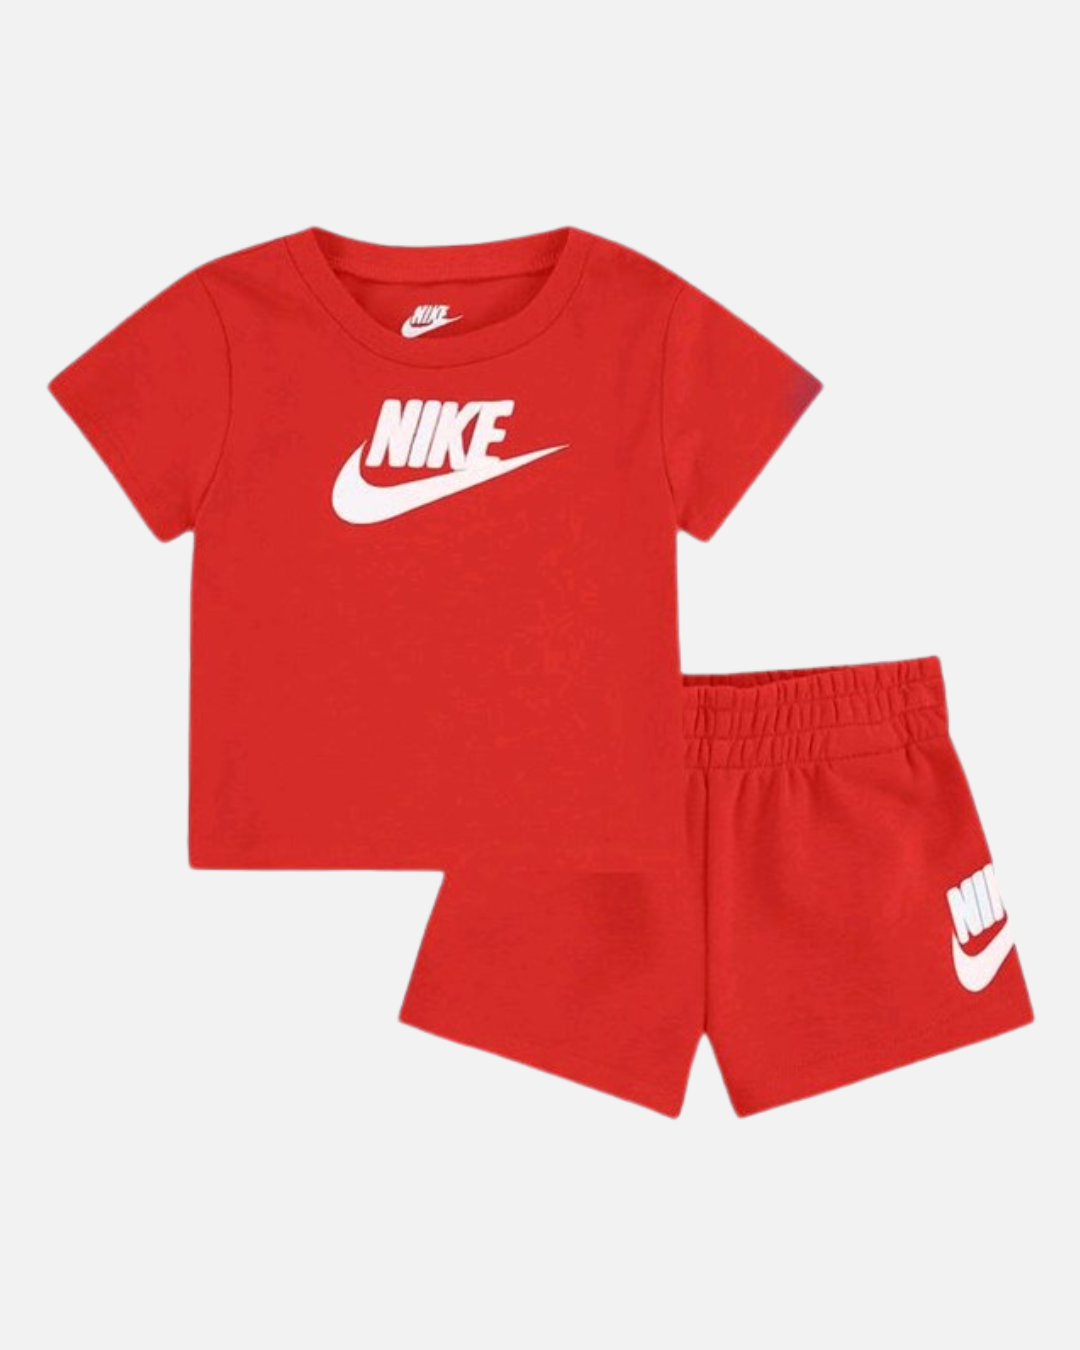 Nike Kids' Set - Red